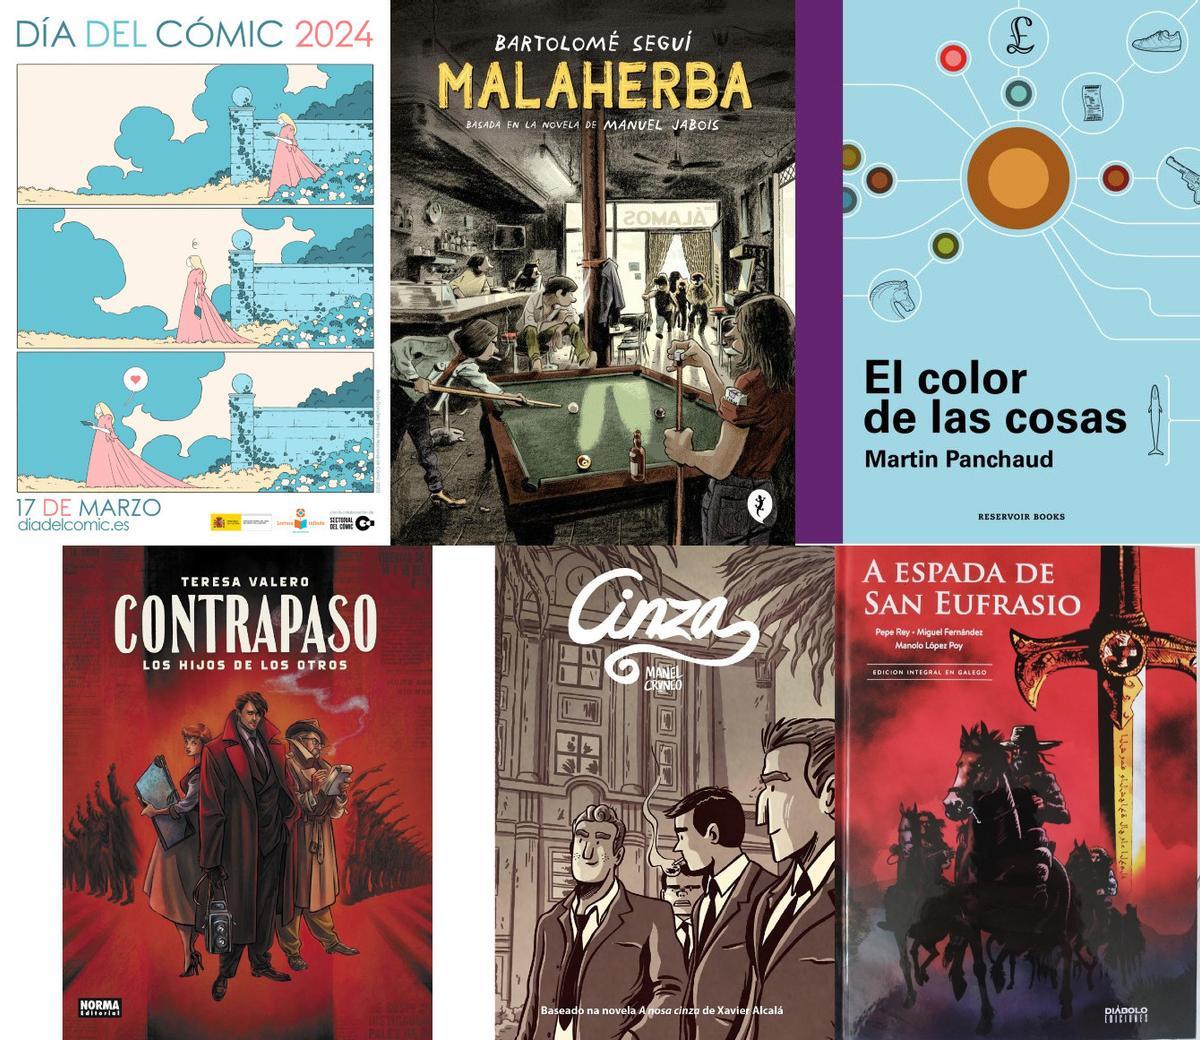 Varios libros recomendados con motivo del Día del Cómic y del Tebeo 2024, a la dereha, arriba, cartel de Borja Pérez, Premio nacional del Cómic en 2023.